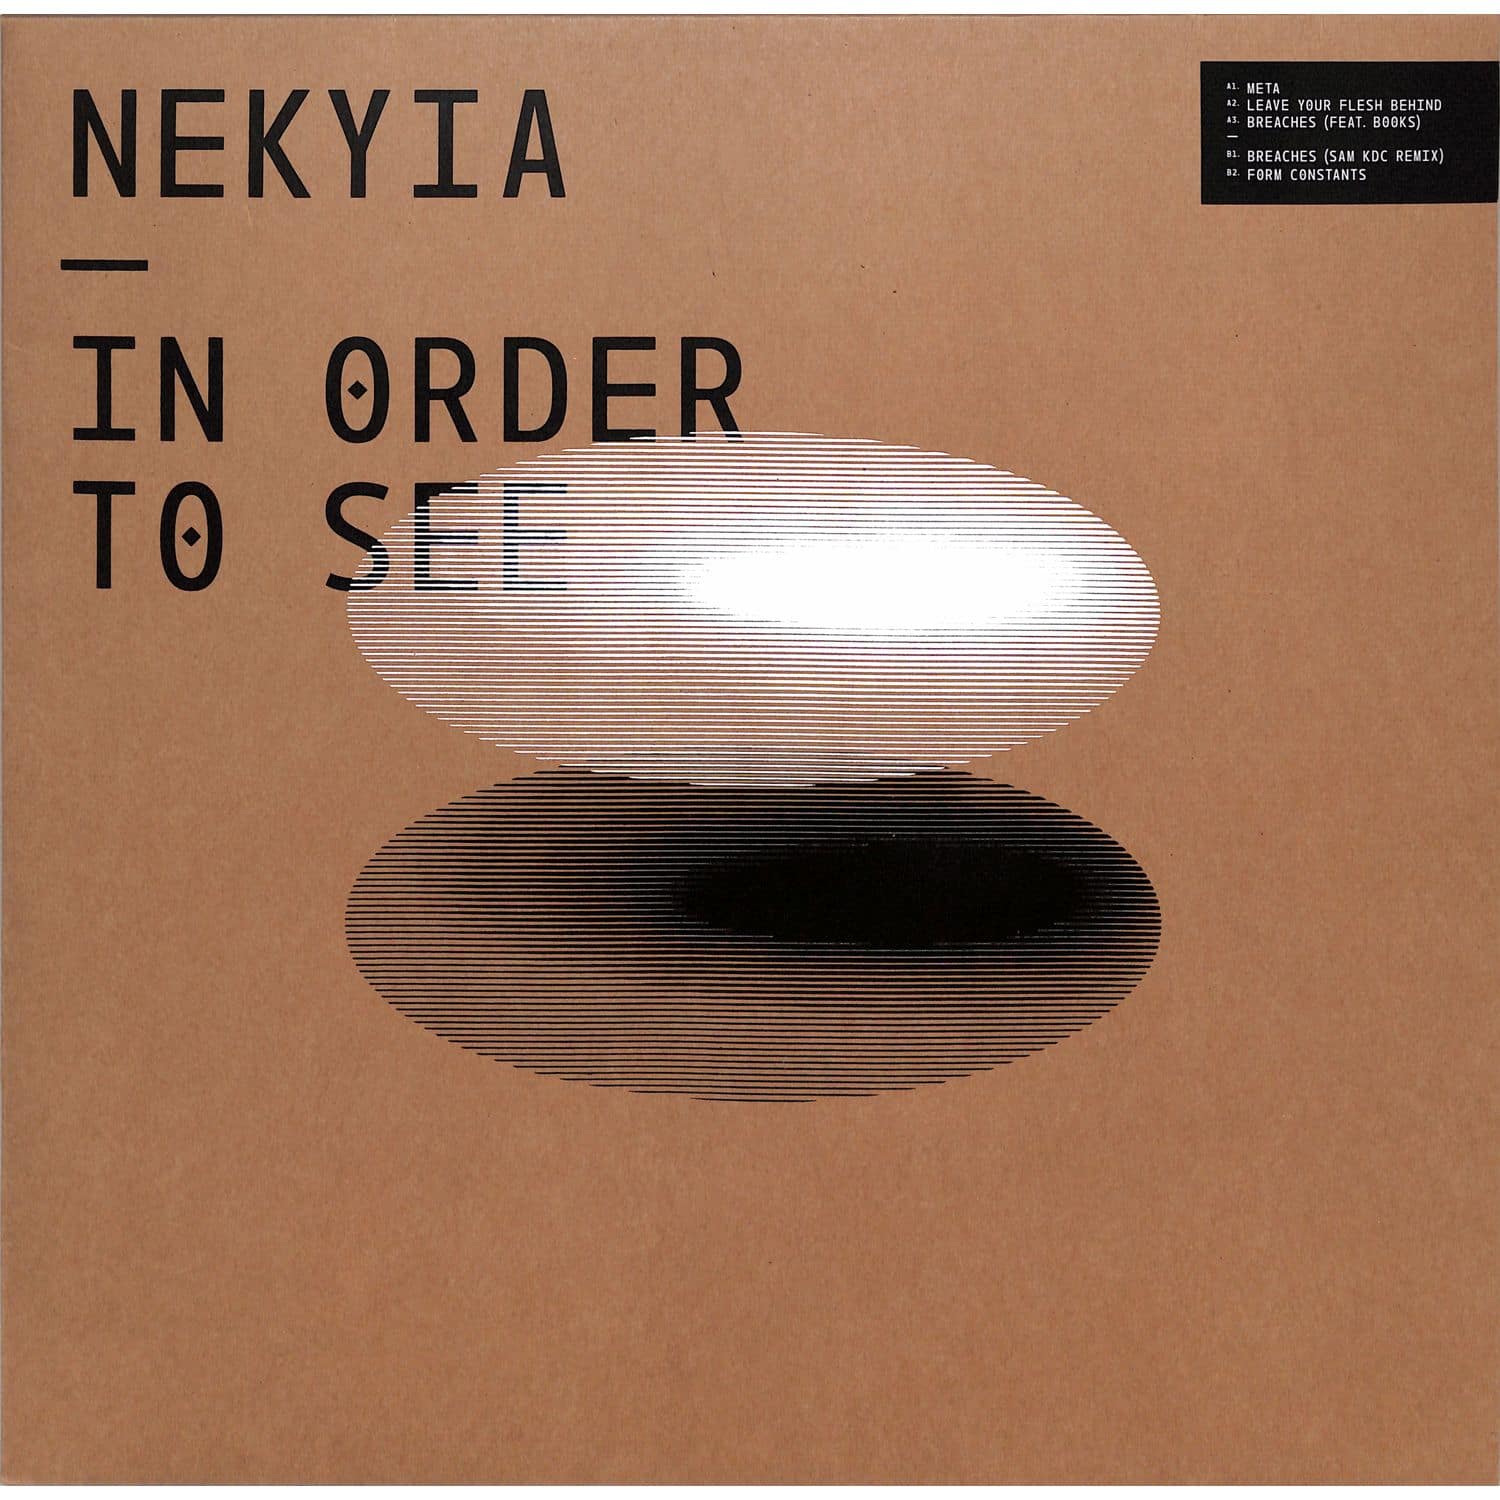 Nekyia - IN ORDER TO SEE 